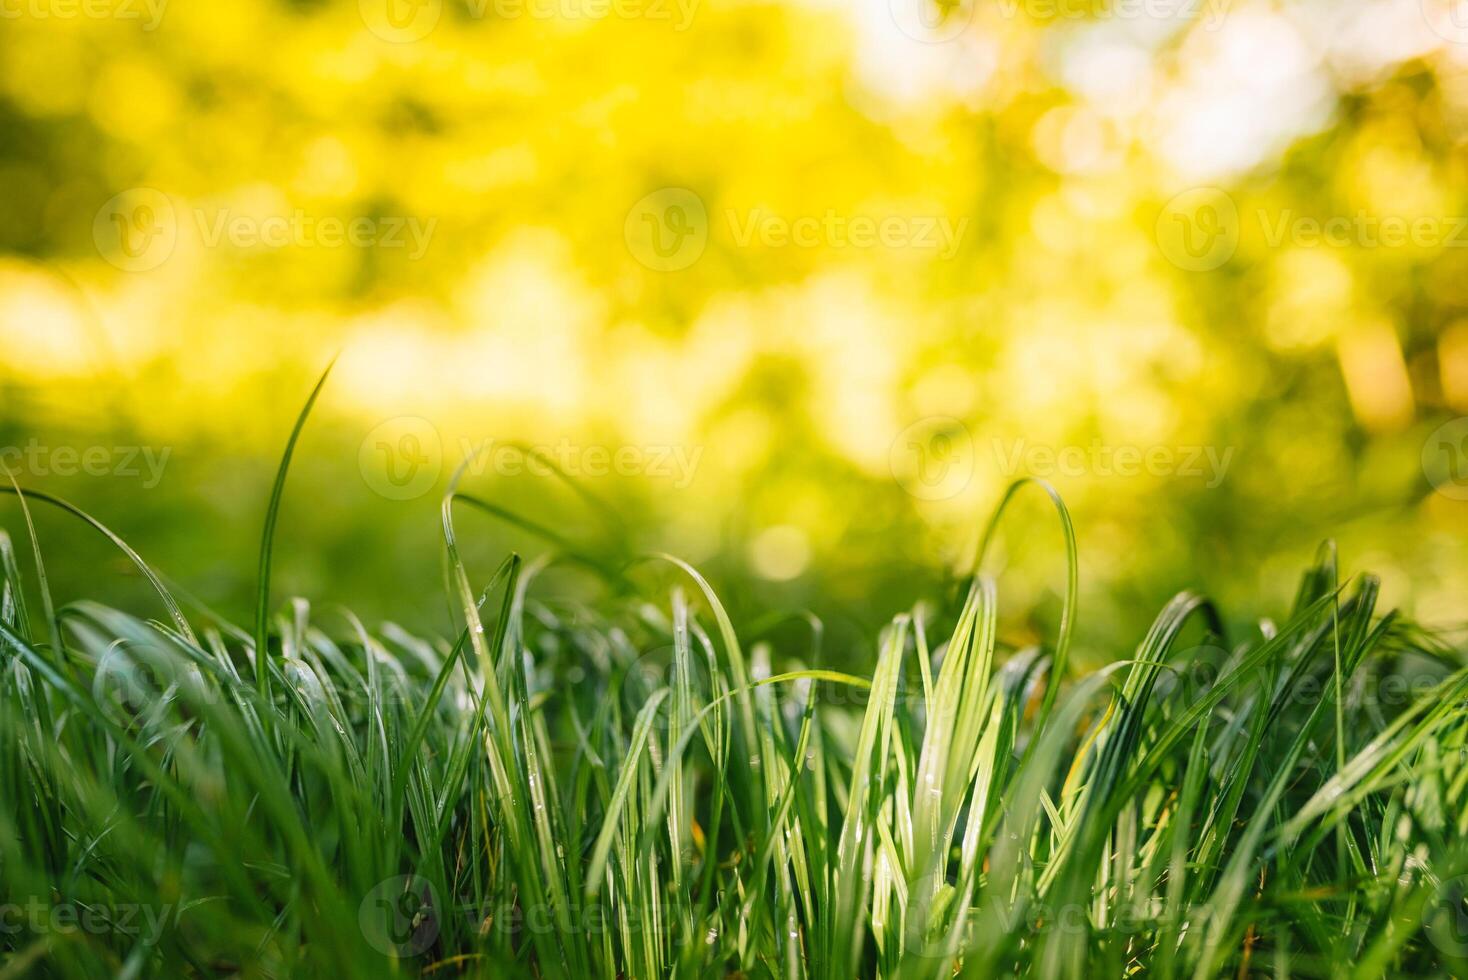 vår eller sommar och abstrakt natur bakgrund med gräs fält. bakgrund med grön gräs fält och bokeh ljus. sommar bakgrund. foto